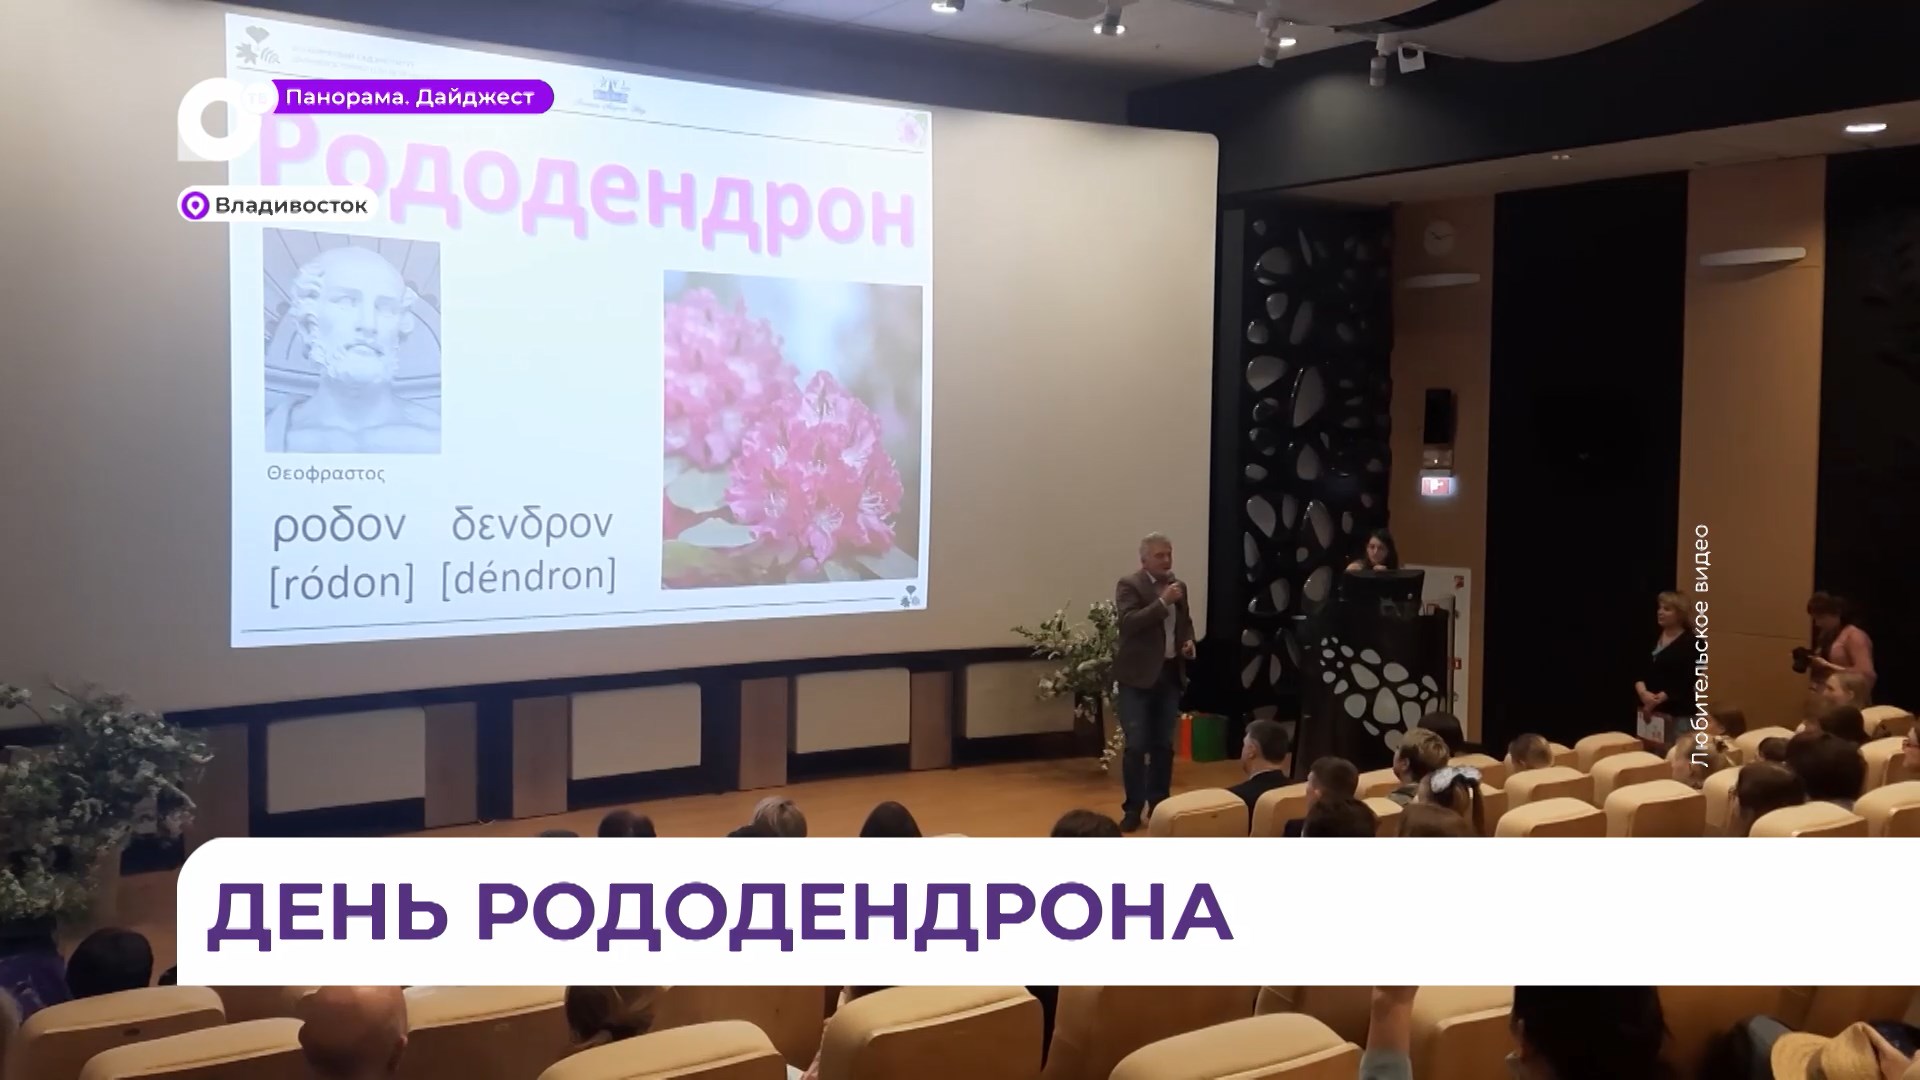 Лучших авторов видеорепортажей конкурса «День рододендрона» наградили в Приморье